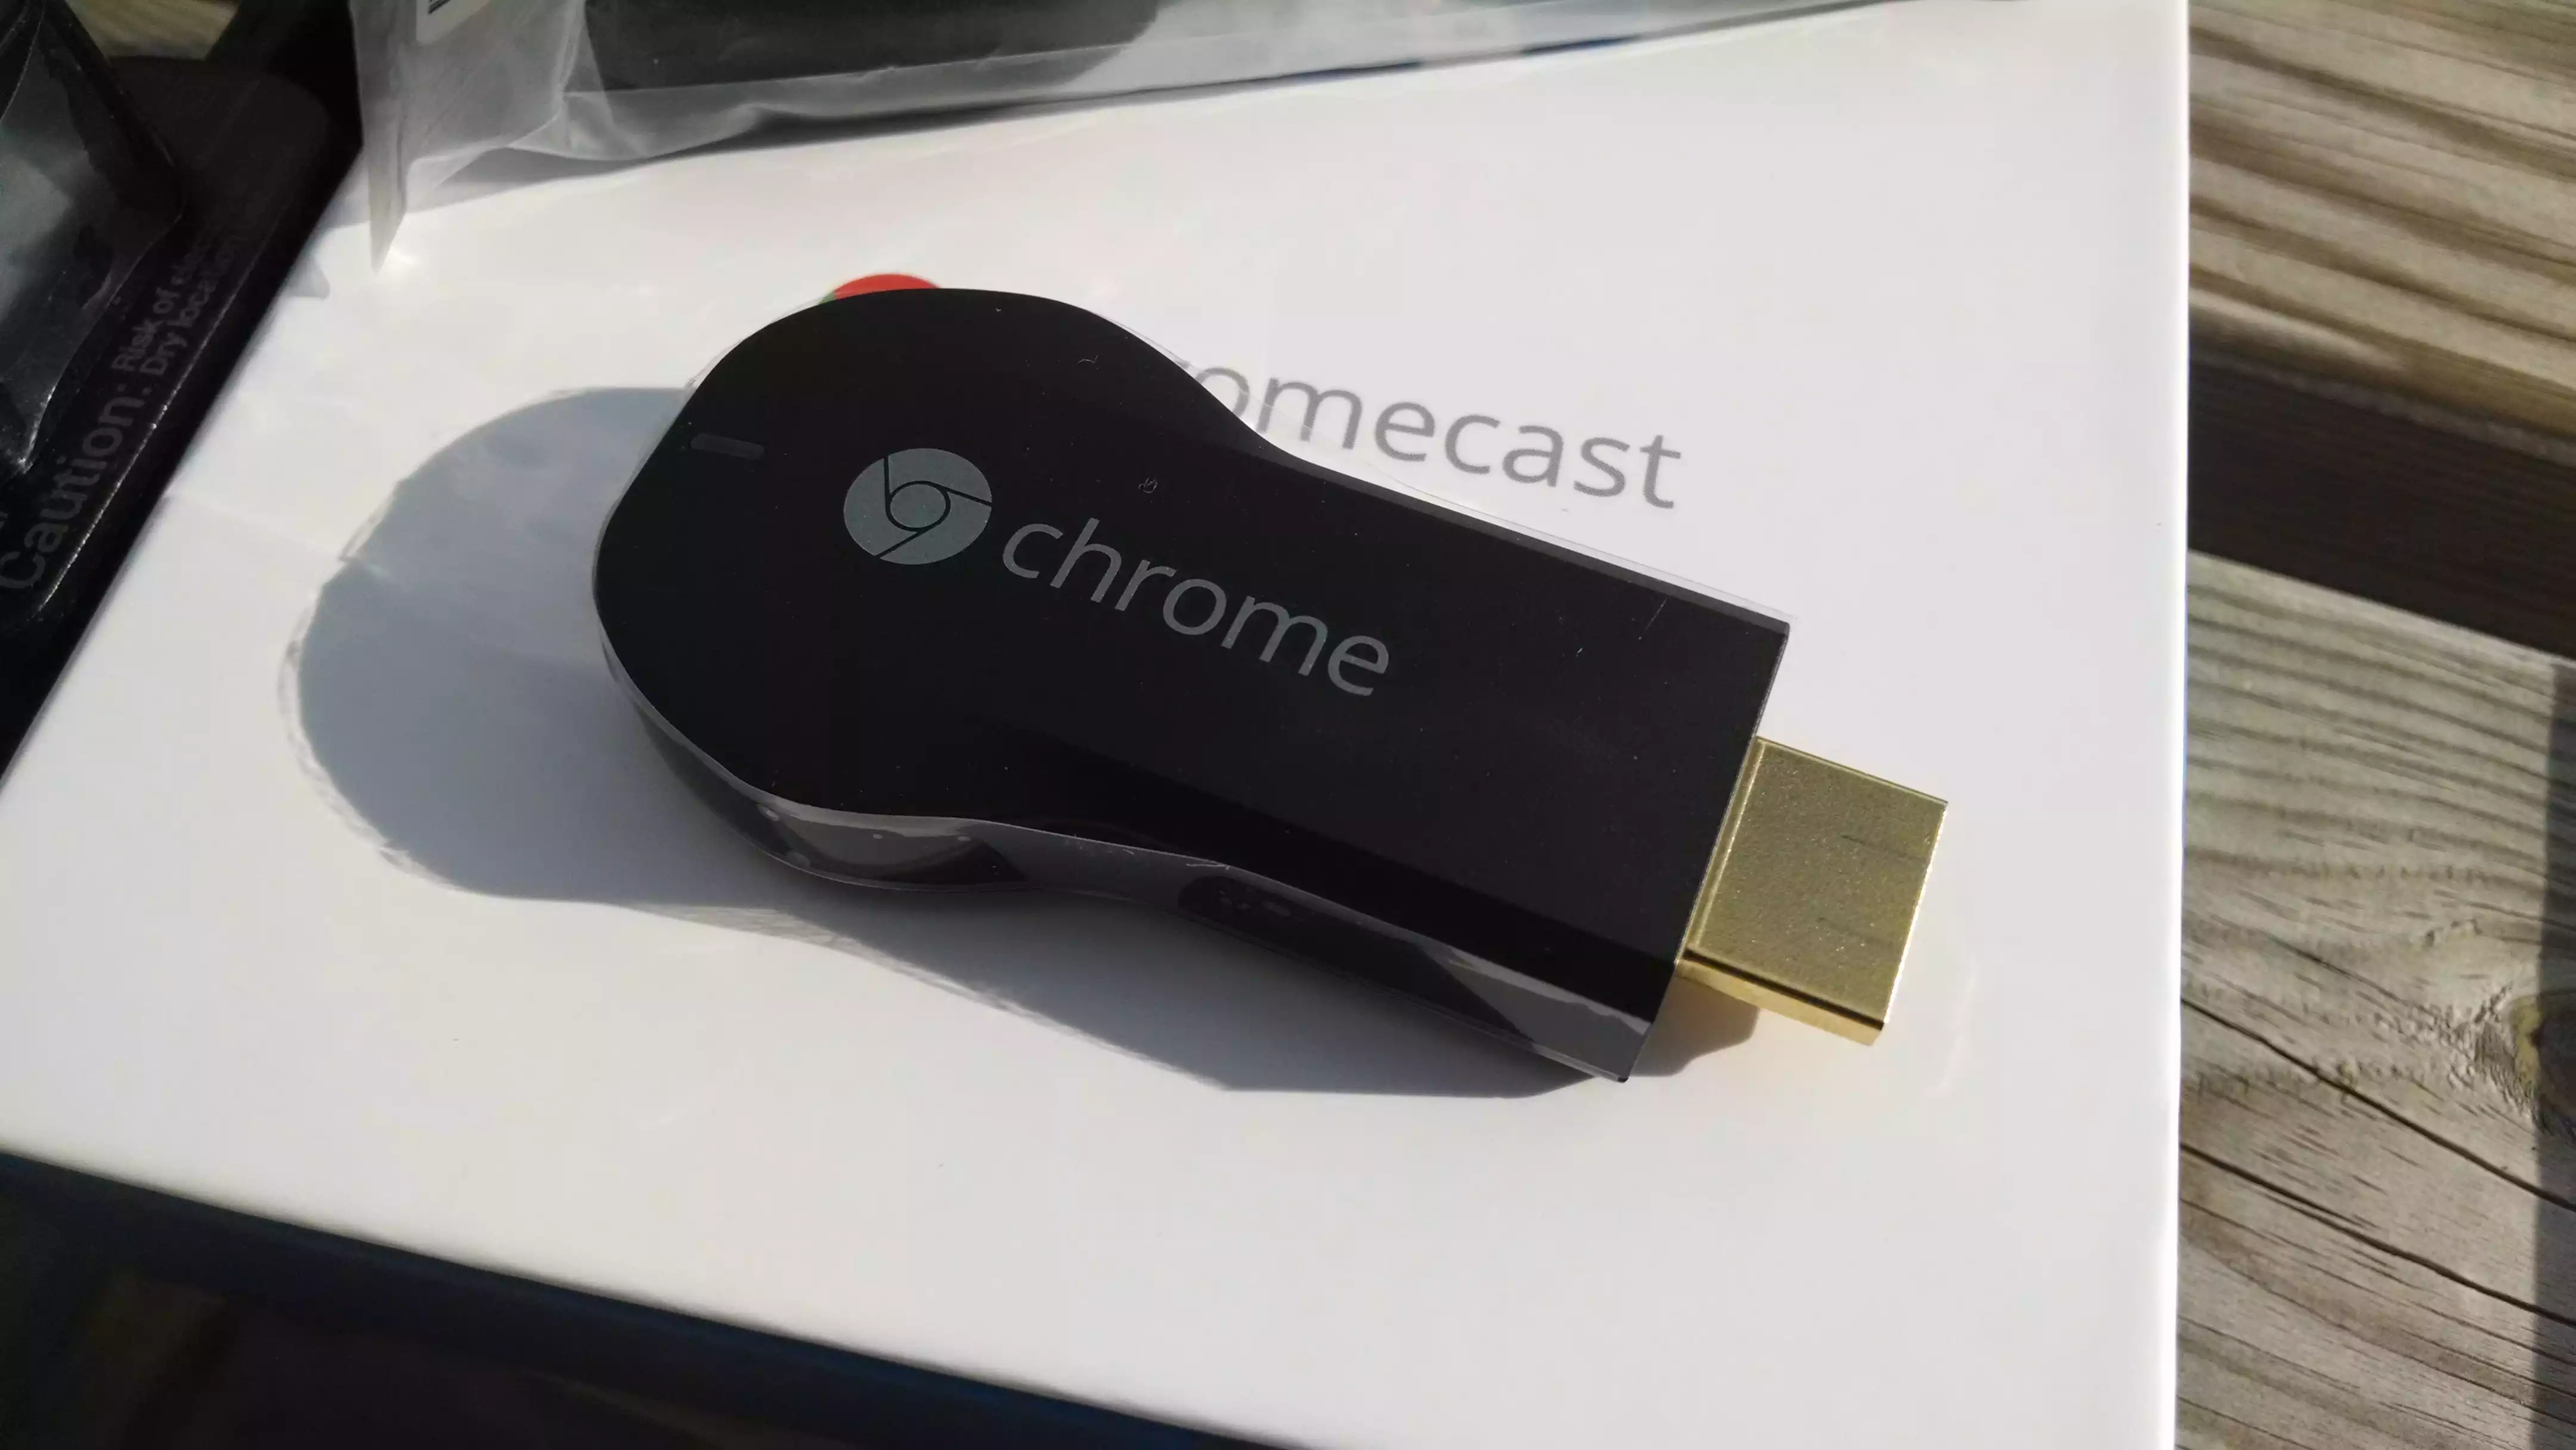 Chromecast : caster des vidéos depuis Windows